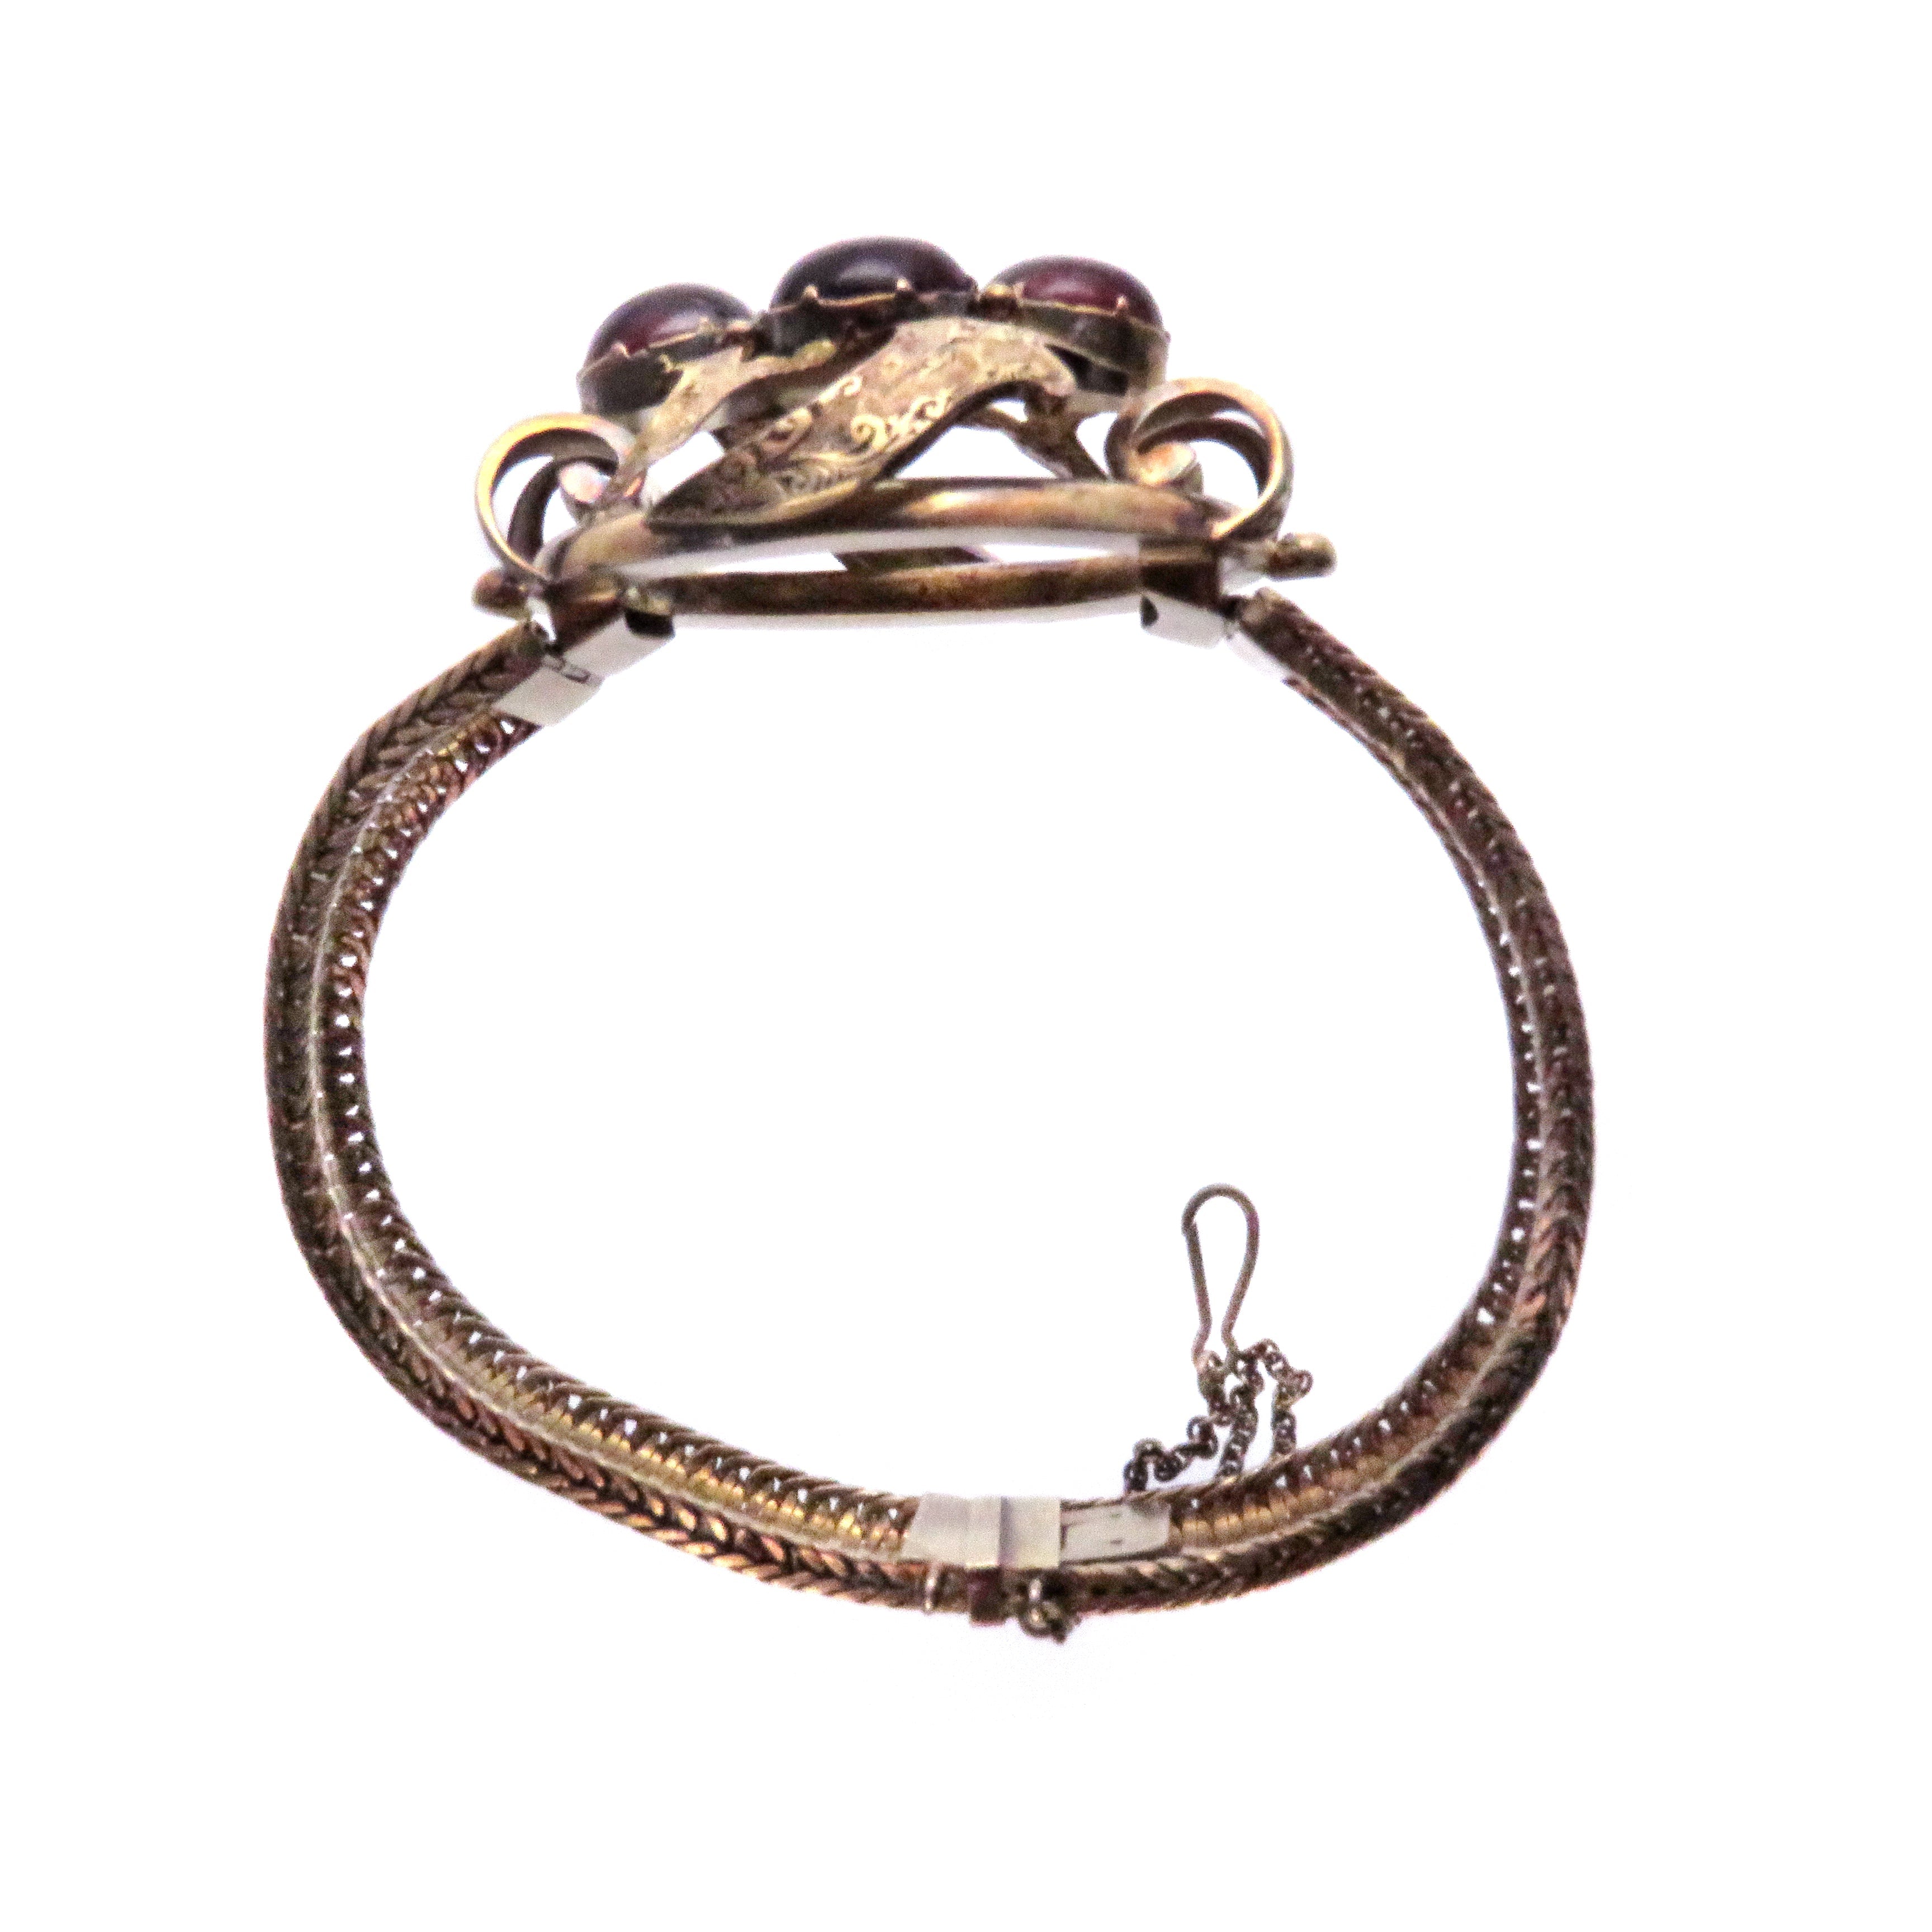 Outstanding 14ct American Garnet Carbuncle Bracelet